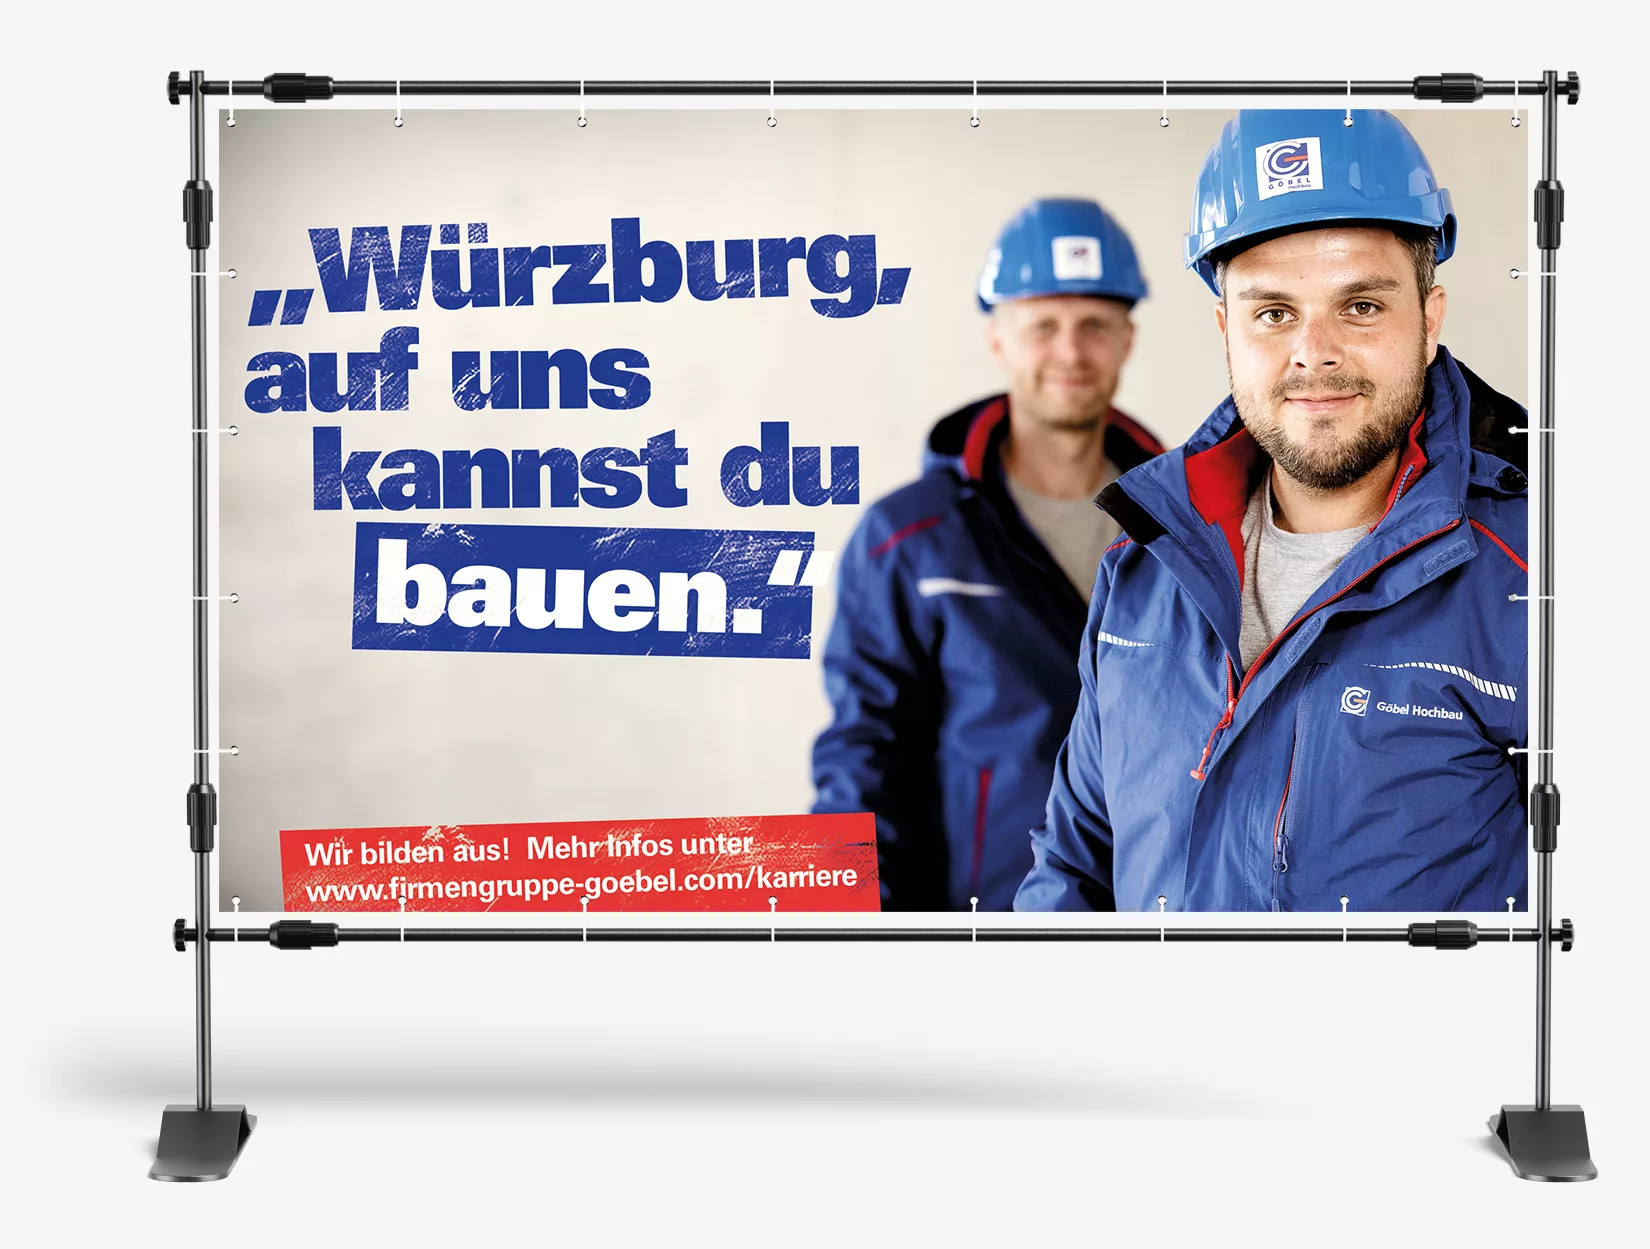 Bauzaunbanner mit zwei Firmengruppe Göbel Mitarbeiter und dem Text "Würzburg, auf uns kannst du bauen."